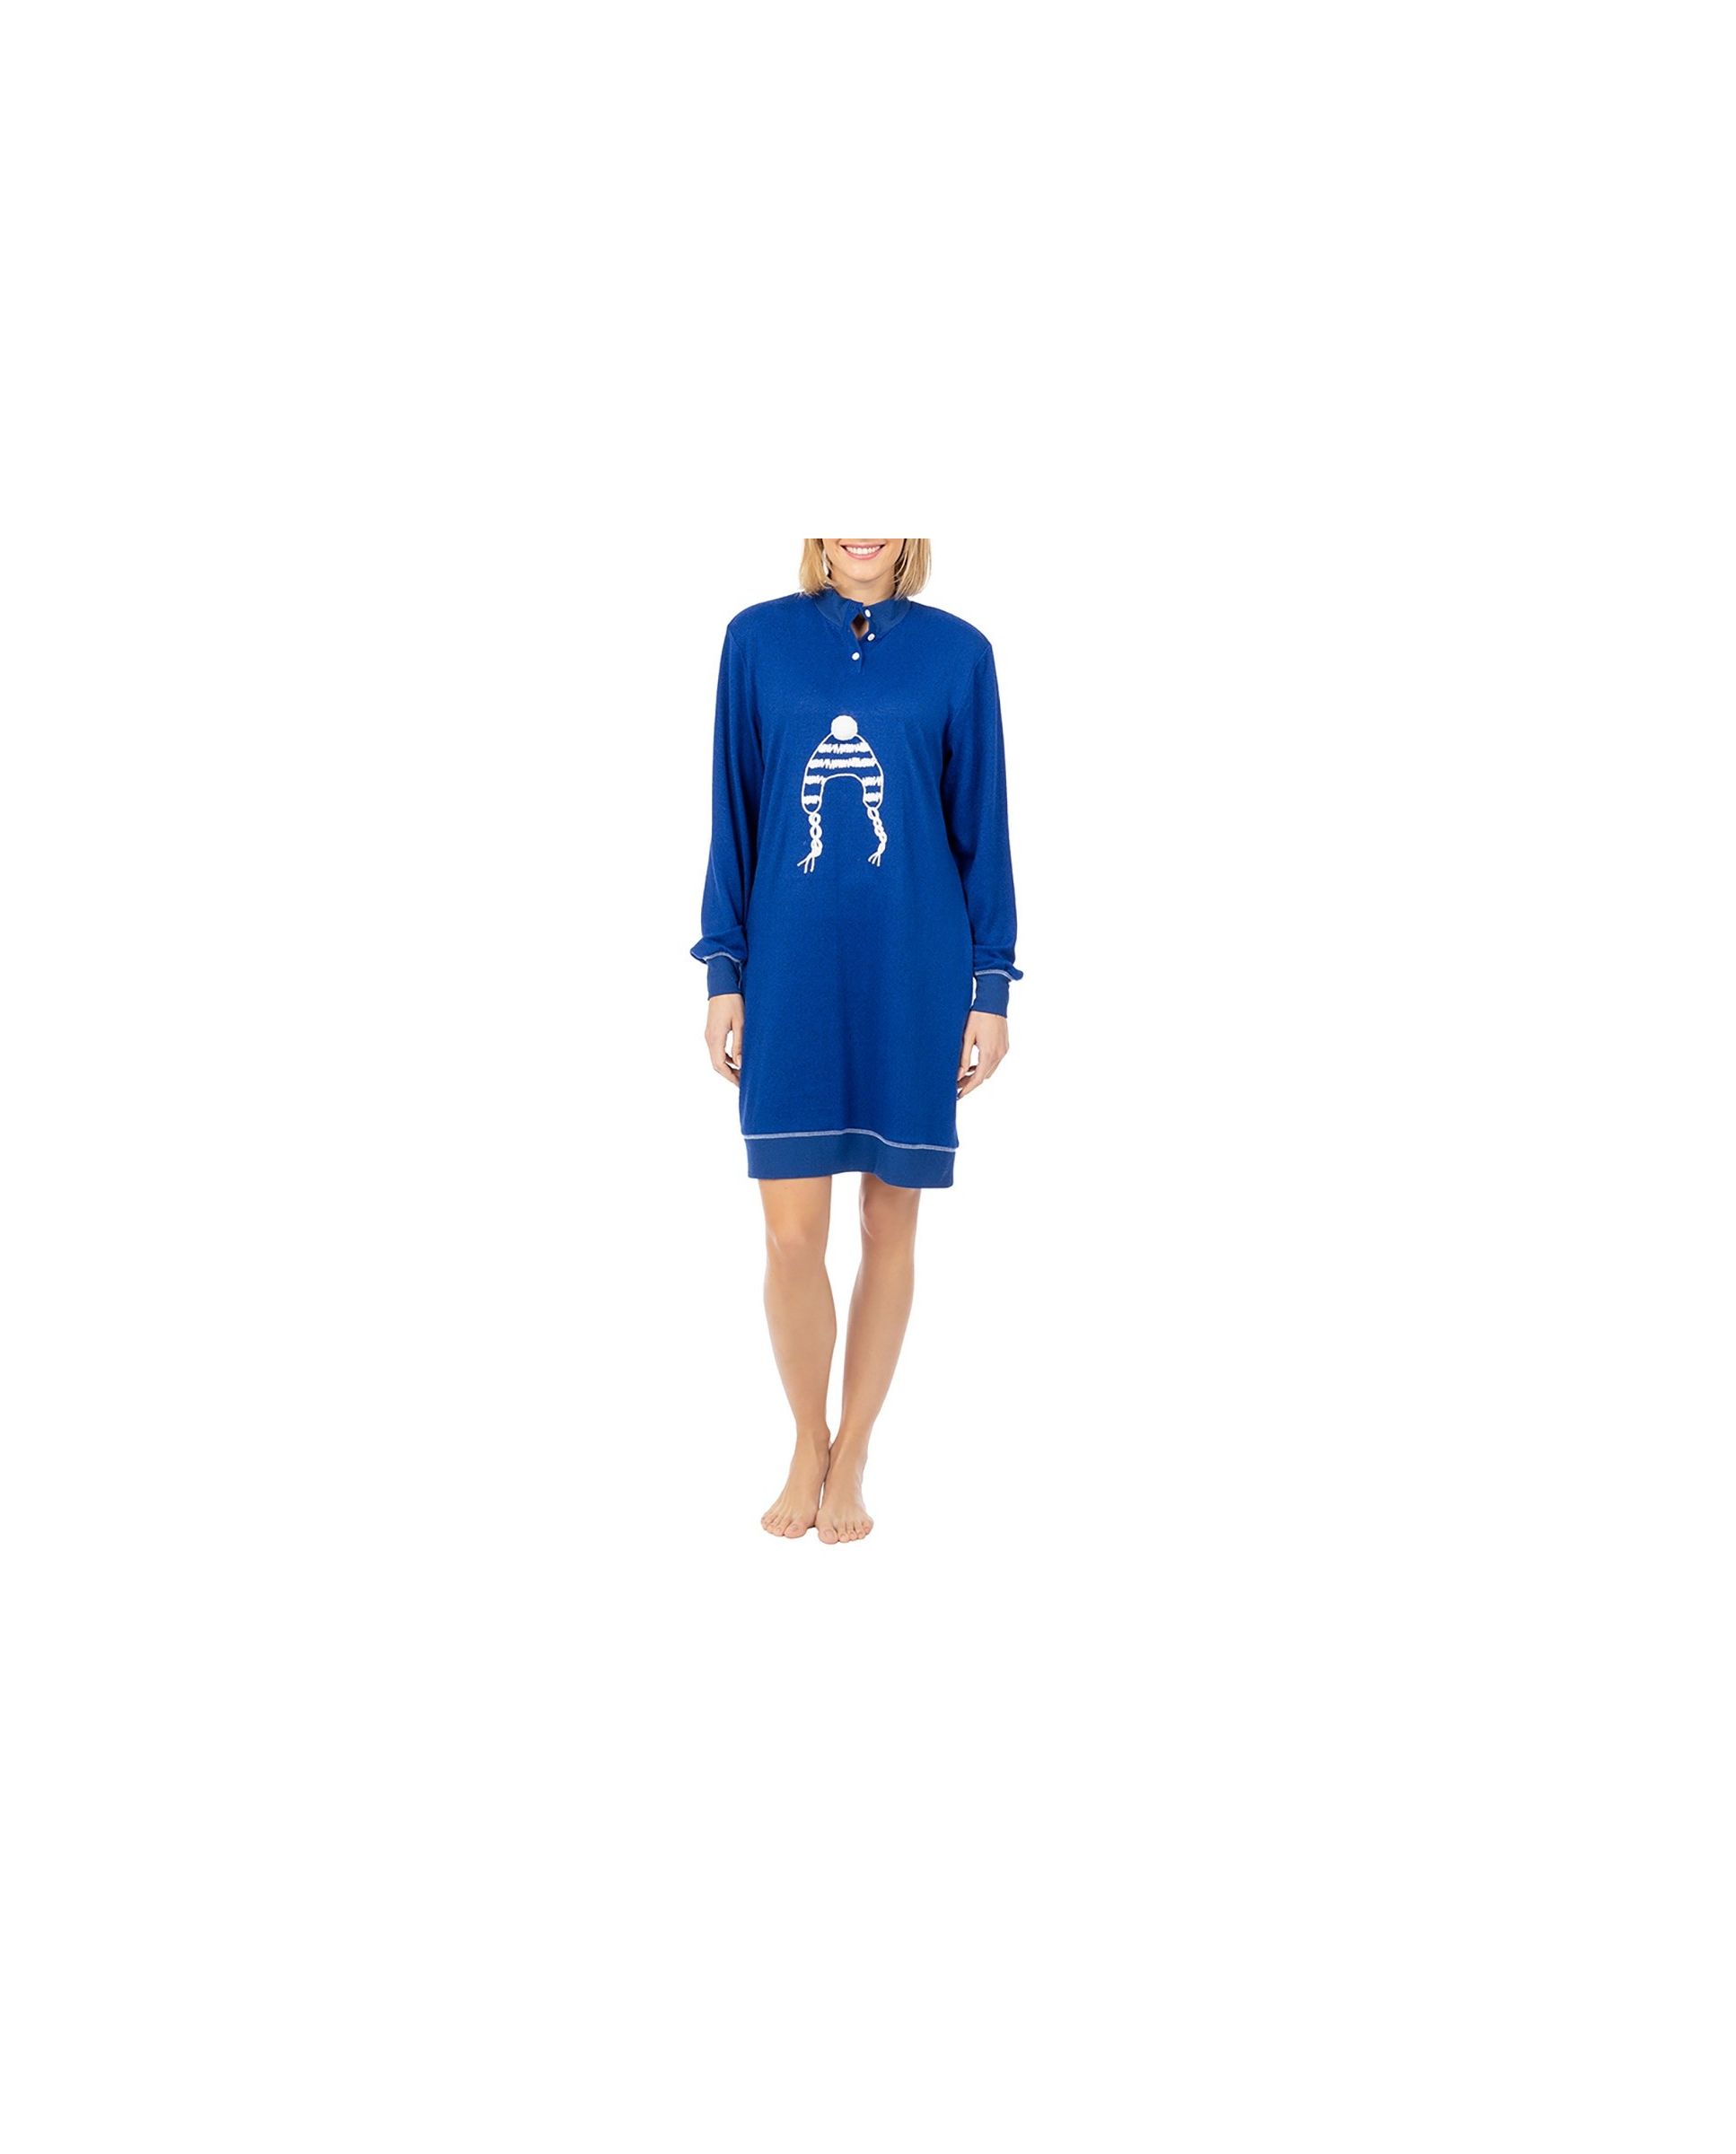 Women's long sleeve short nightdress turtleneck blue